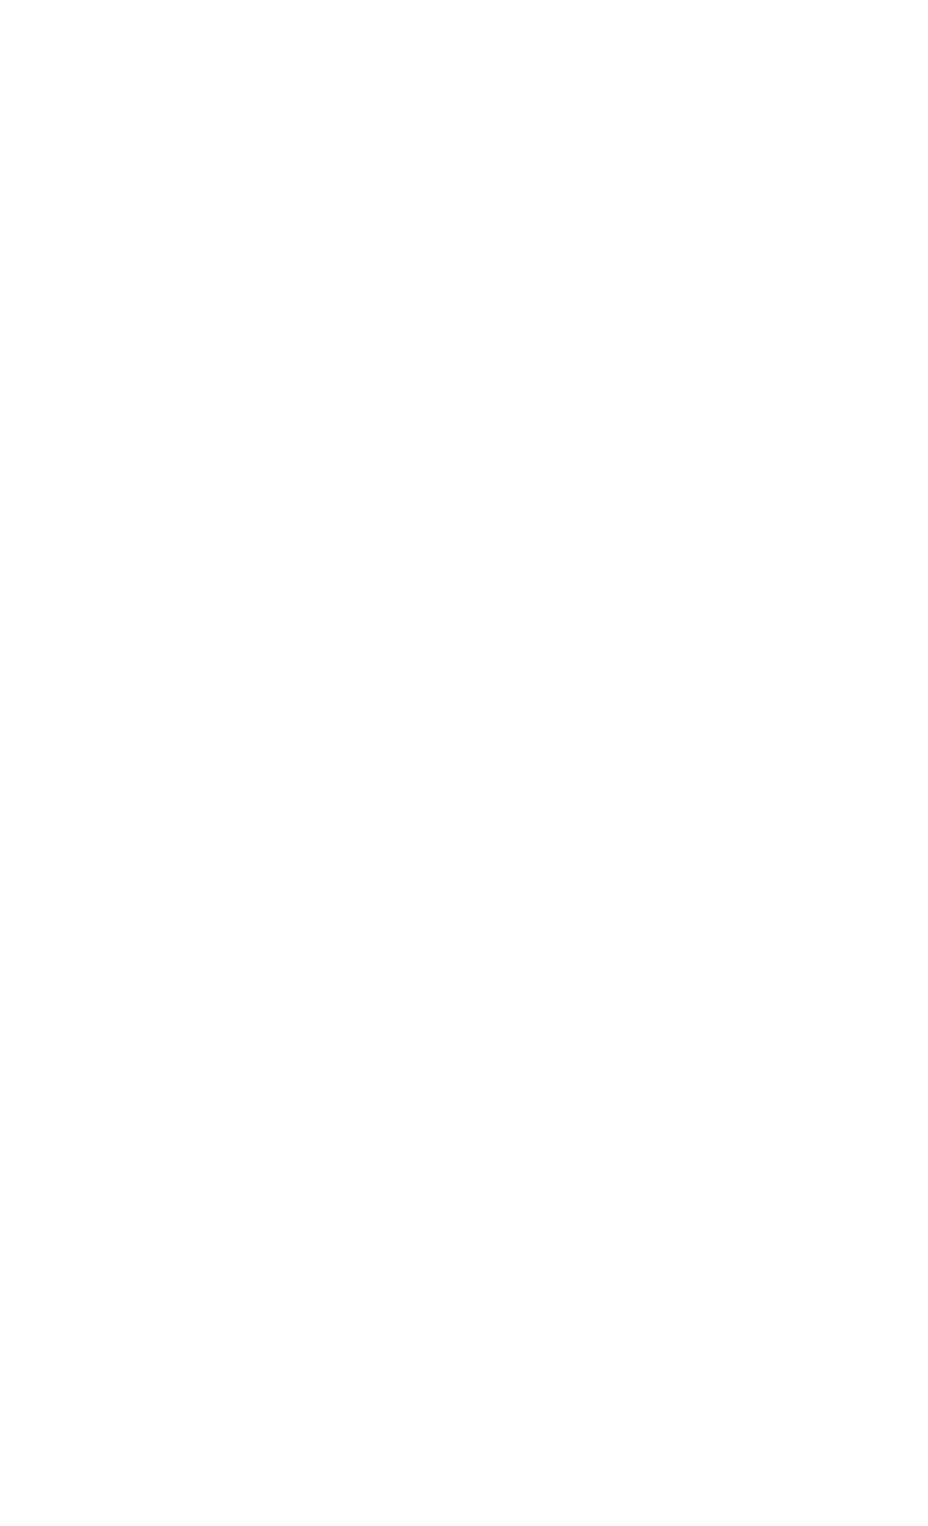 Ipsen logo for dark backgrounds (transparent PNG)